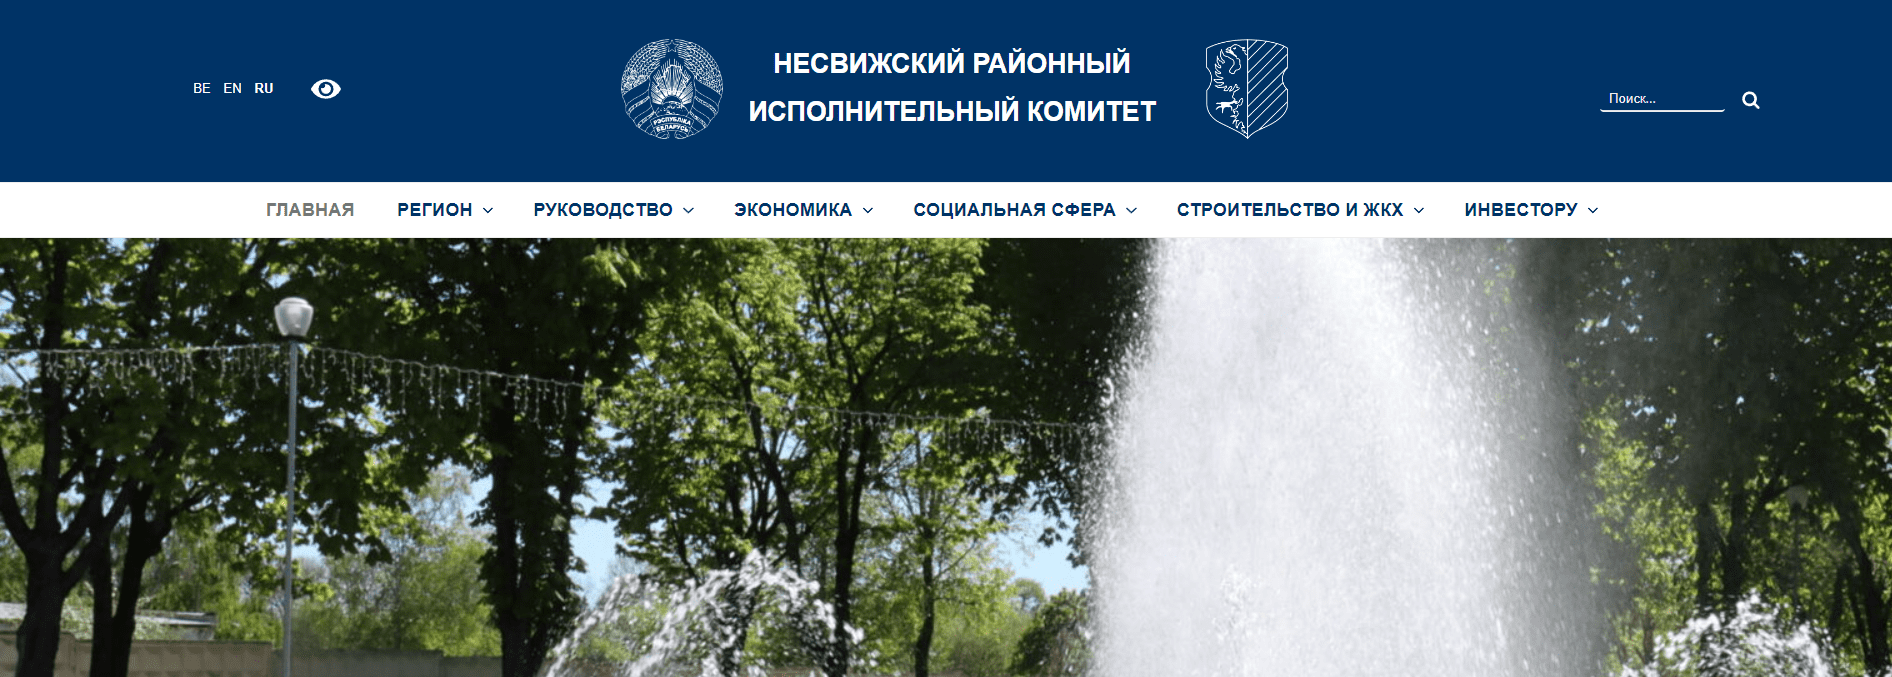 Несвижский районный исполнительный комитет (nesvizh.gov.by) - официальный сайт